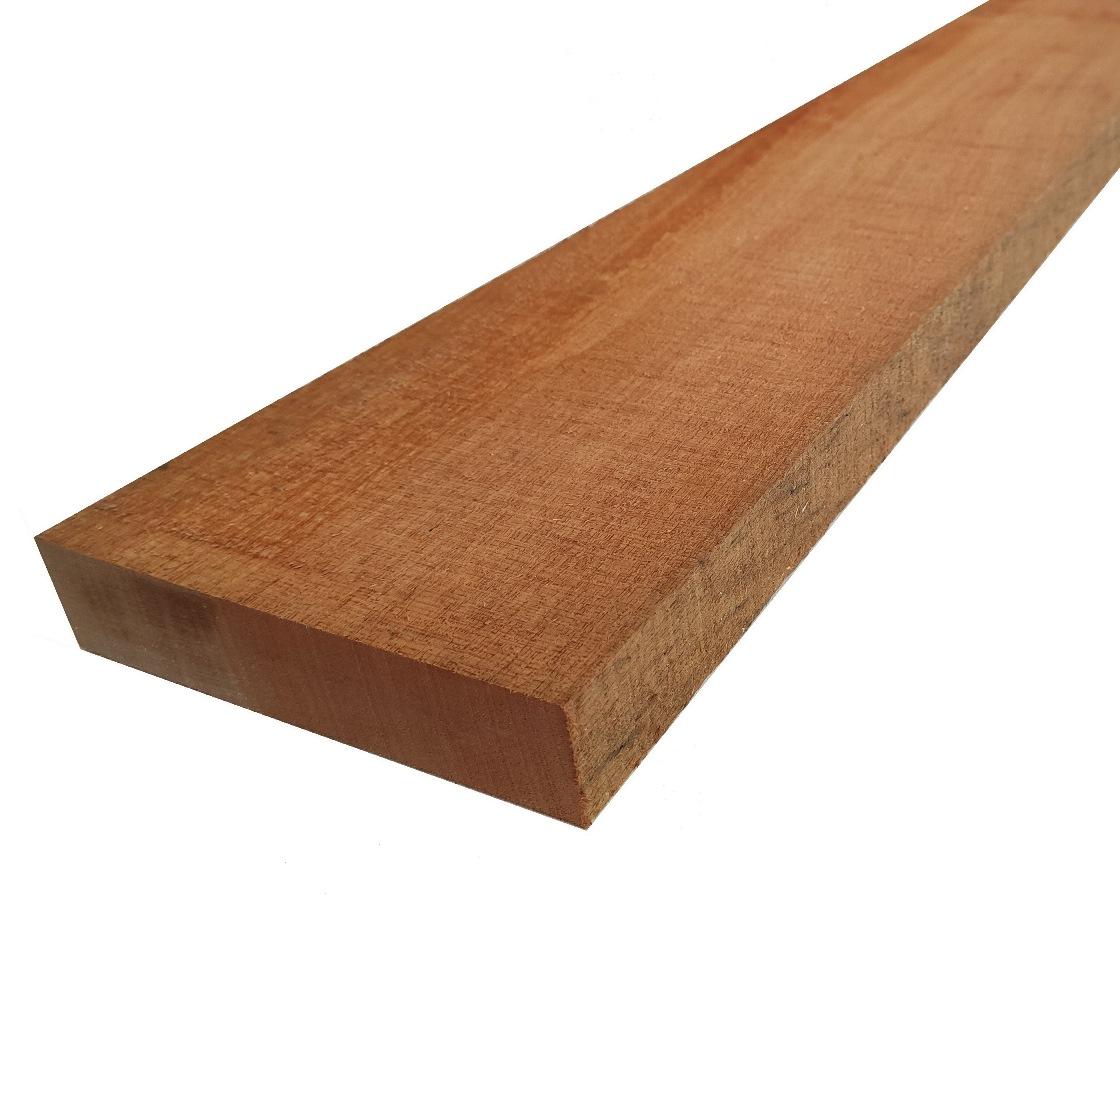 Listello in legno cedro del libero grezzo mm 50 x varie larghezze x 2300  larghezza: mm 50 spessore: mm 50 lunghezza: mm 2300